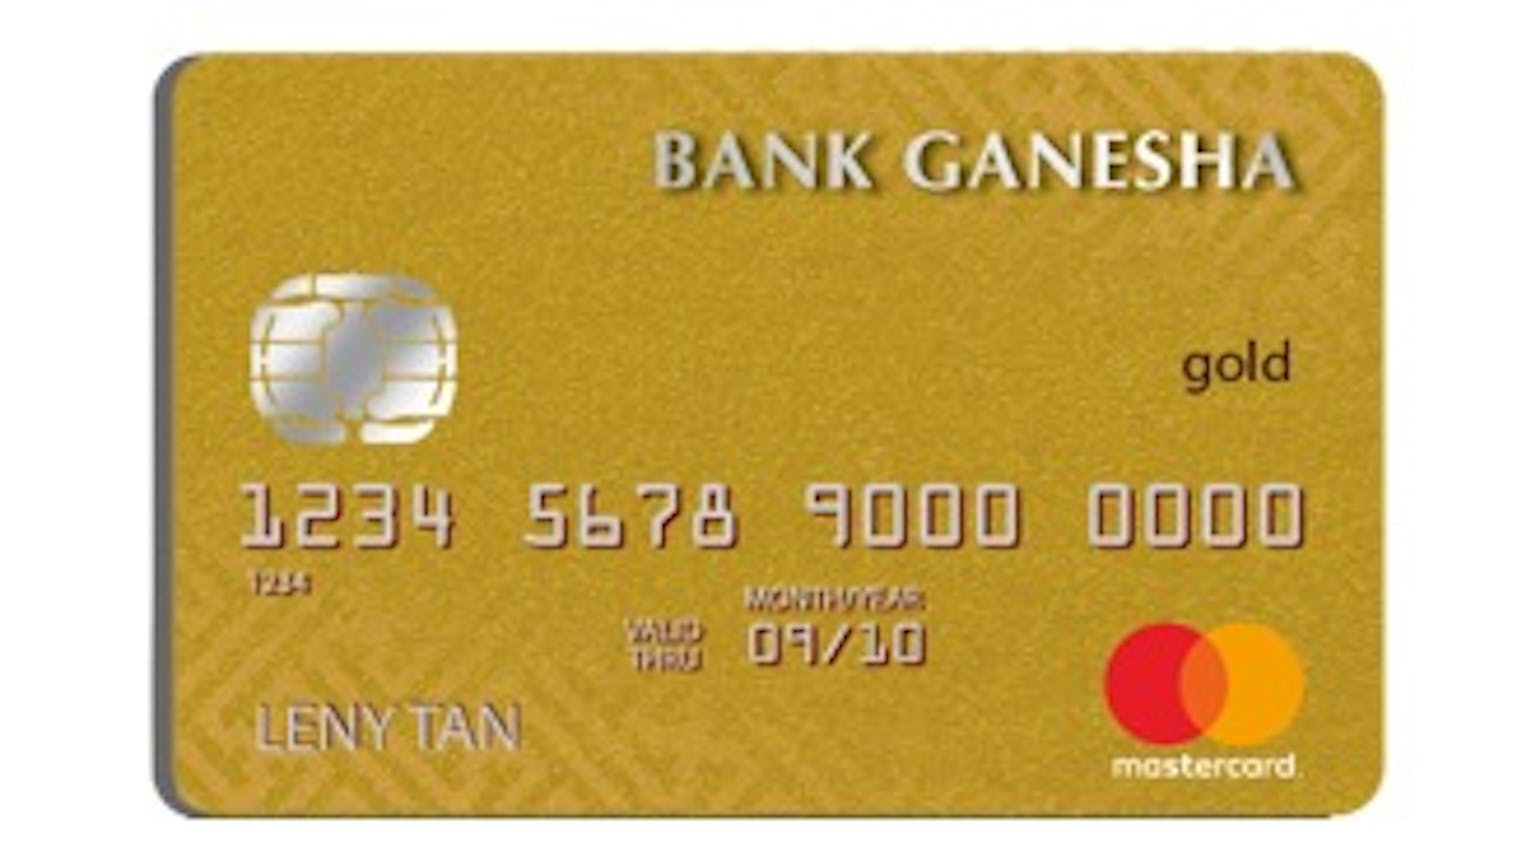 Bank Ganesha Mastercard Gold